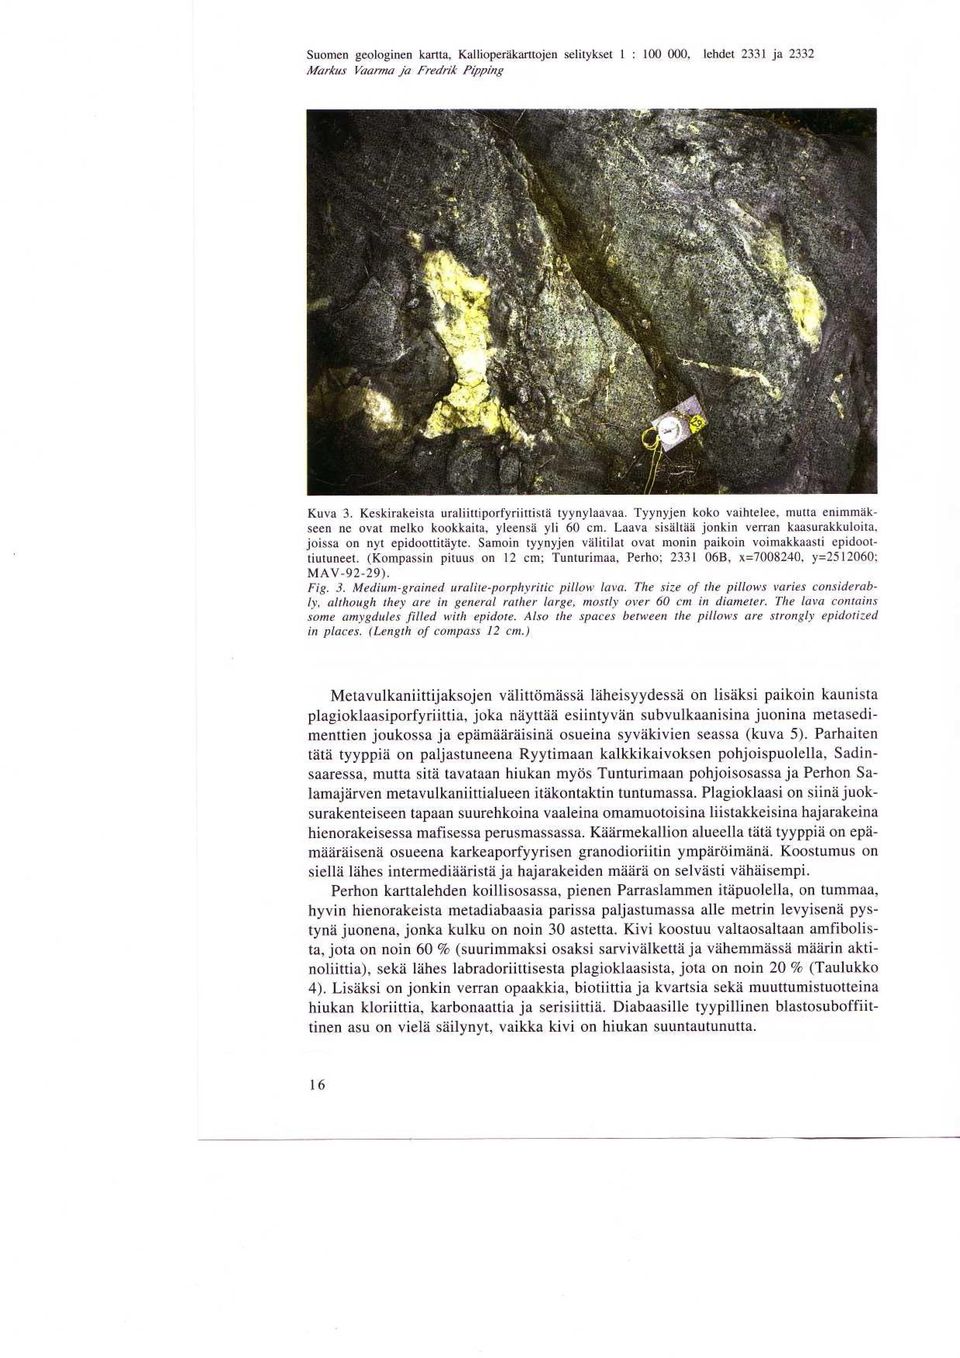 voimakkaasti epidoottiutuneet (Kompassin pituus on 12 cm ; Tunturimaa, Perho; 2331 06B, x=7008240, y=2512060 ; MAV-92-29) Fig 3 Medium-grained uralite-porphyritic pillow lava The size of the pillows